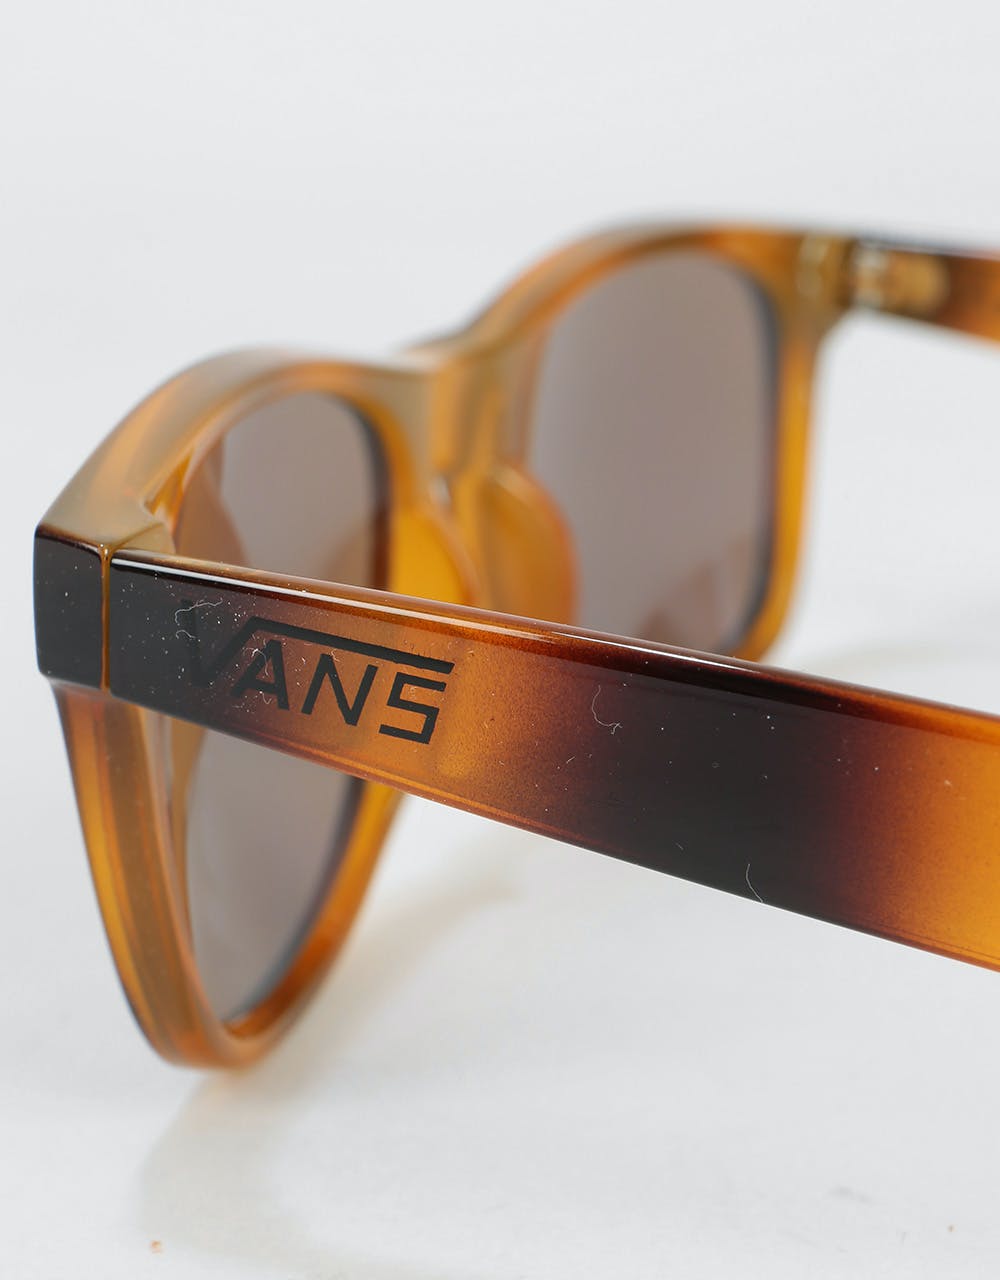 Vans Spicoli 4 Sunglasses - Tortoiseshell  (Mirrored Lens)